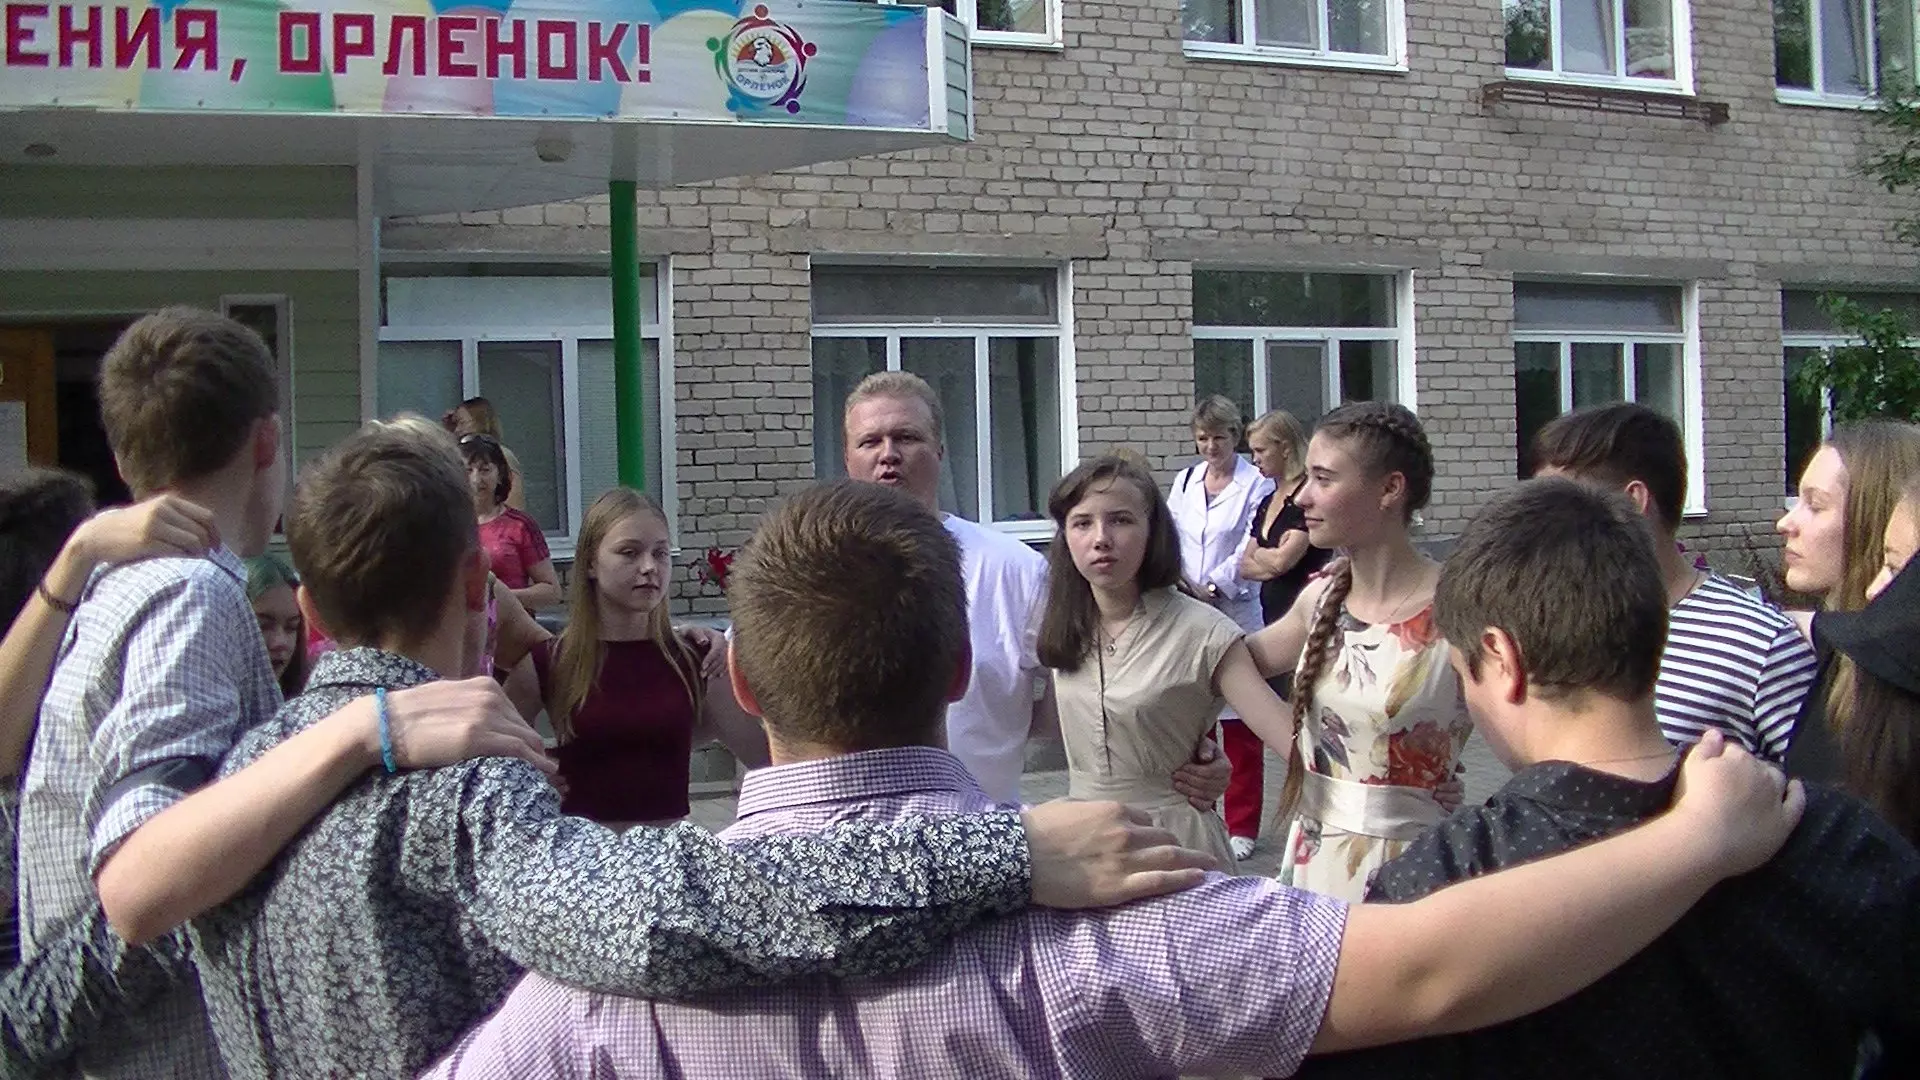 Санаторий «Орленок» в Усть-Качке будет капитально отремонтирован за 73 млн рублей